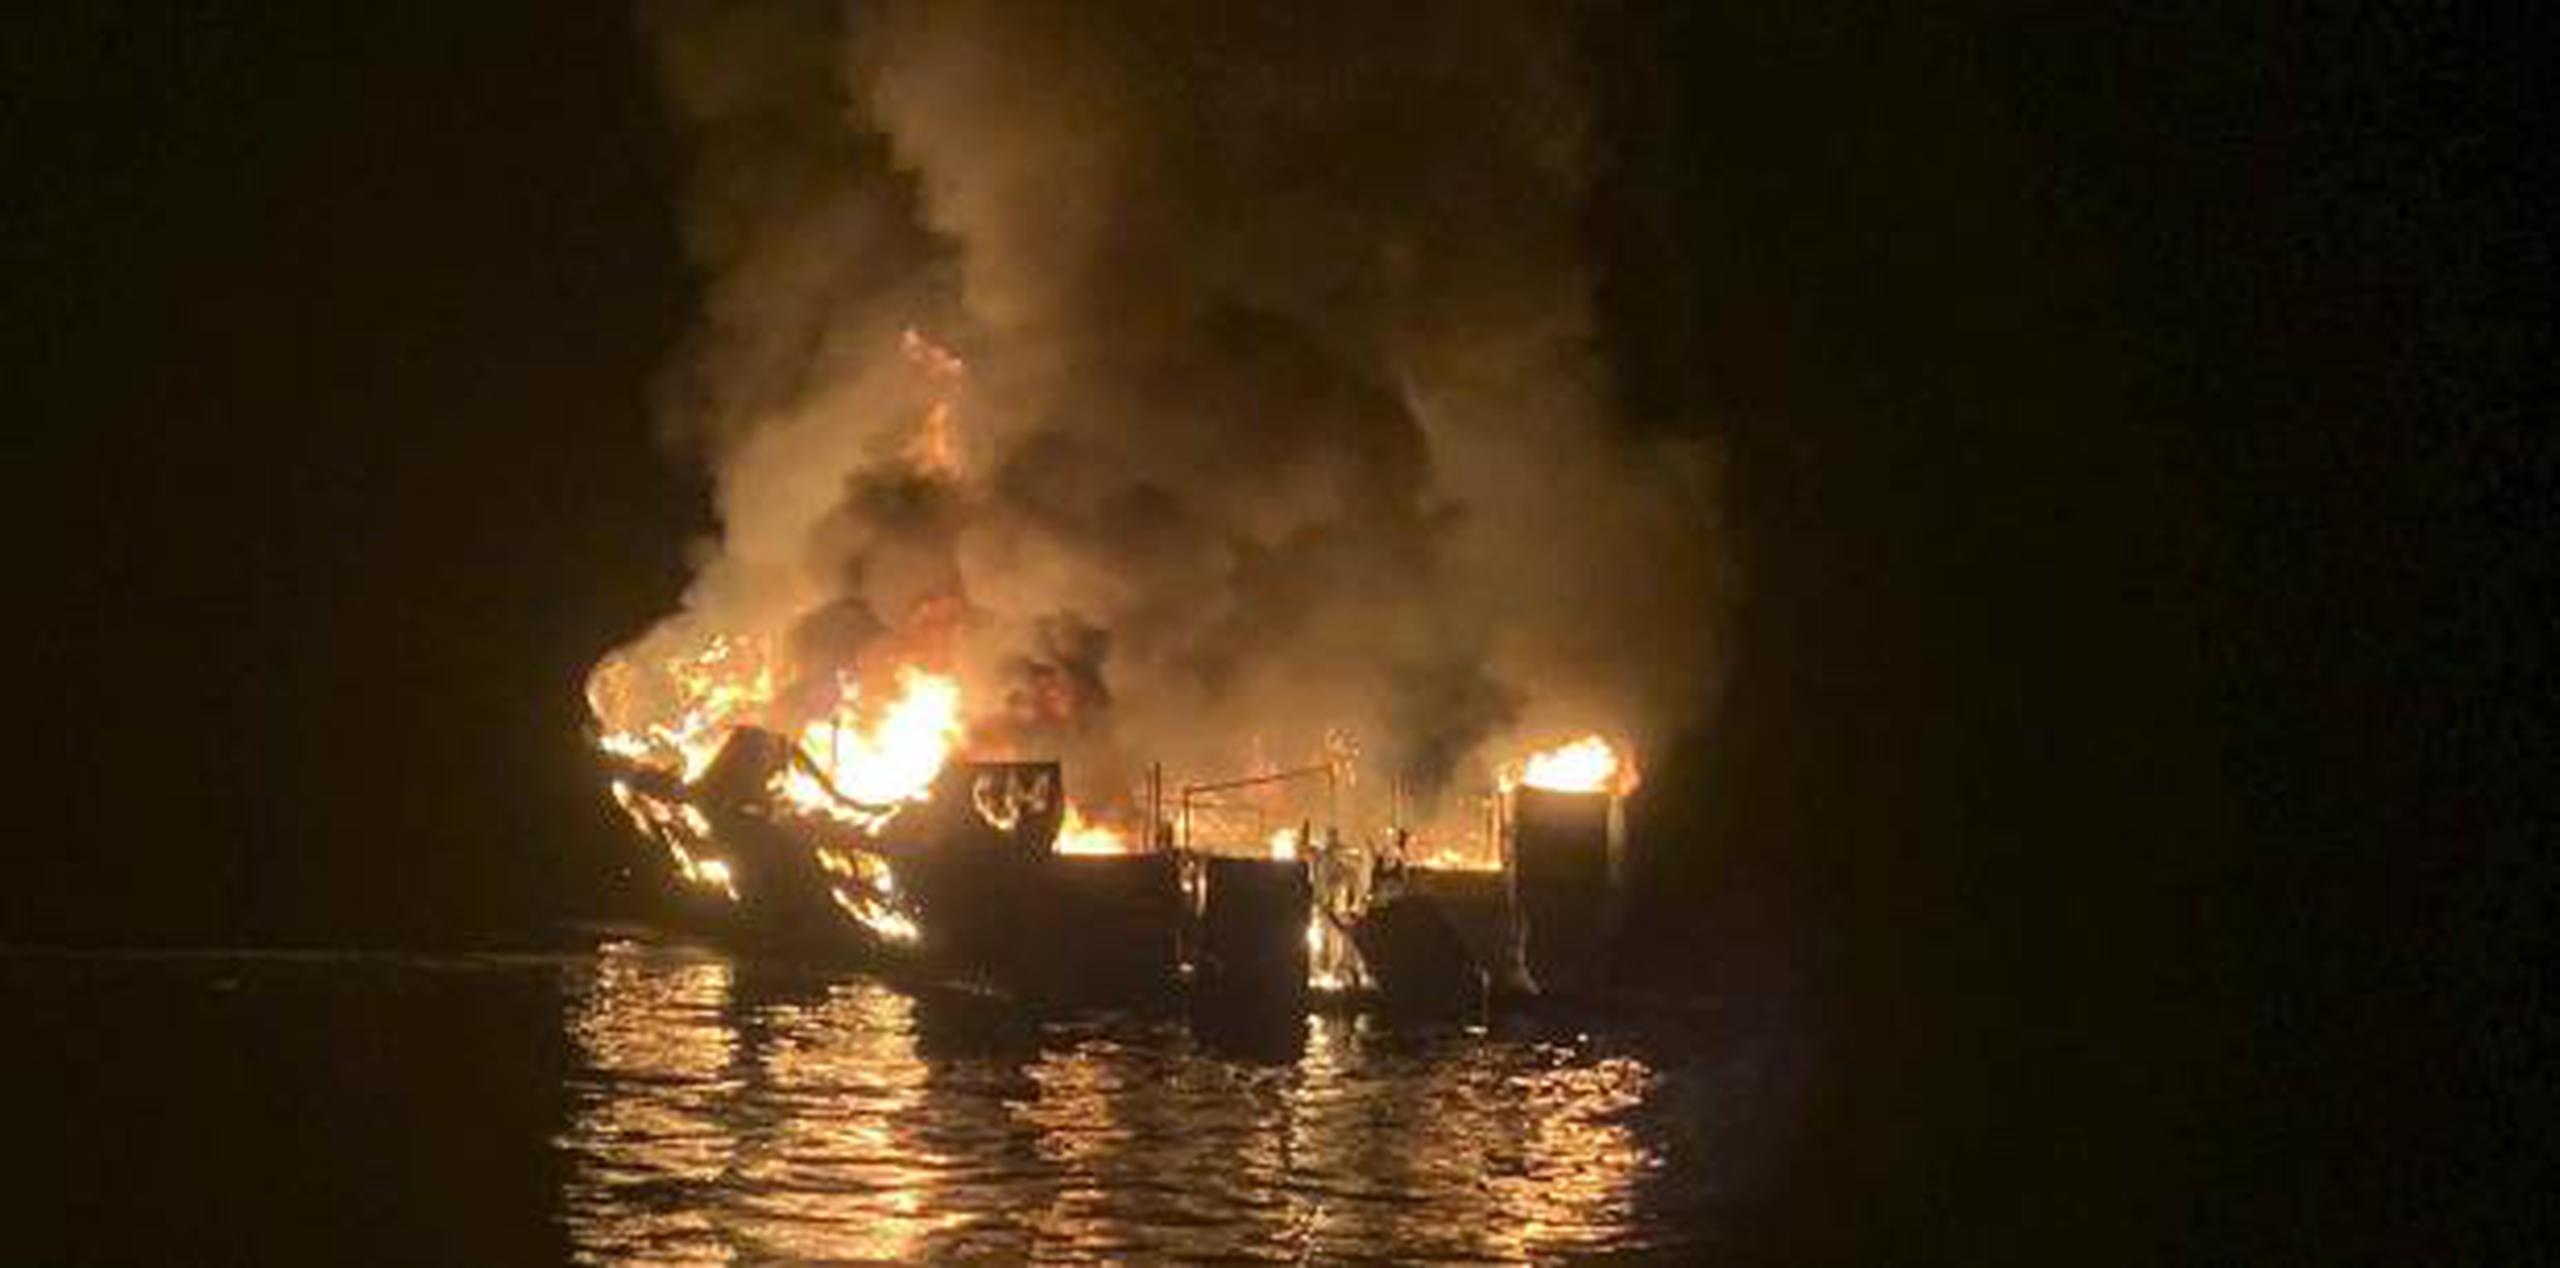 Cinco tripulantes, incluyendo el capitán, que estuvieron sobre la cubierta pudieron escapar luego que el bote se incendió el lunes por la madrugada. (Santa Barbara County Fire Department vía AP)